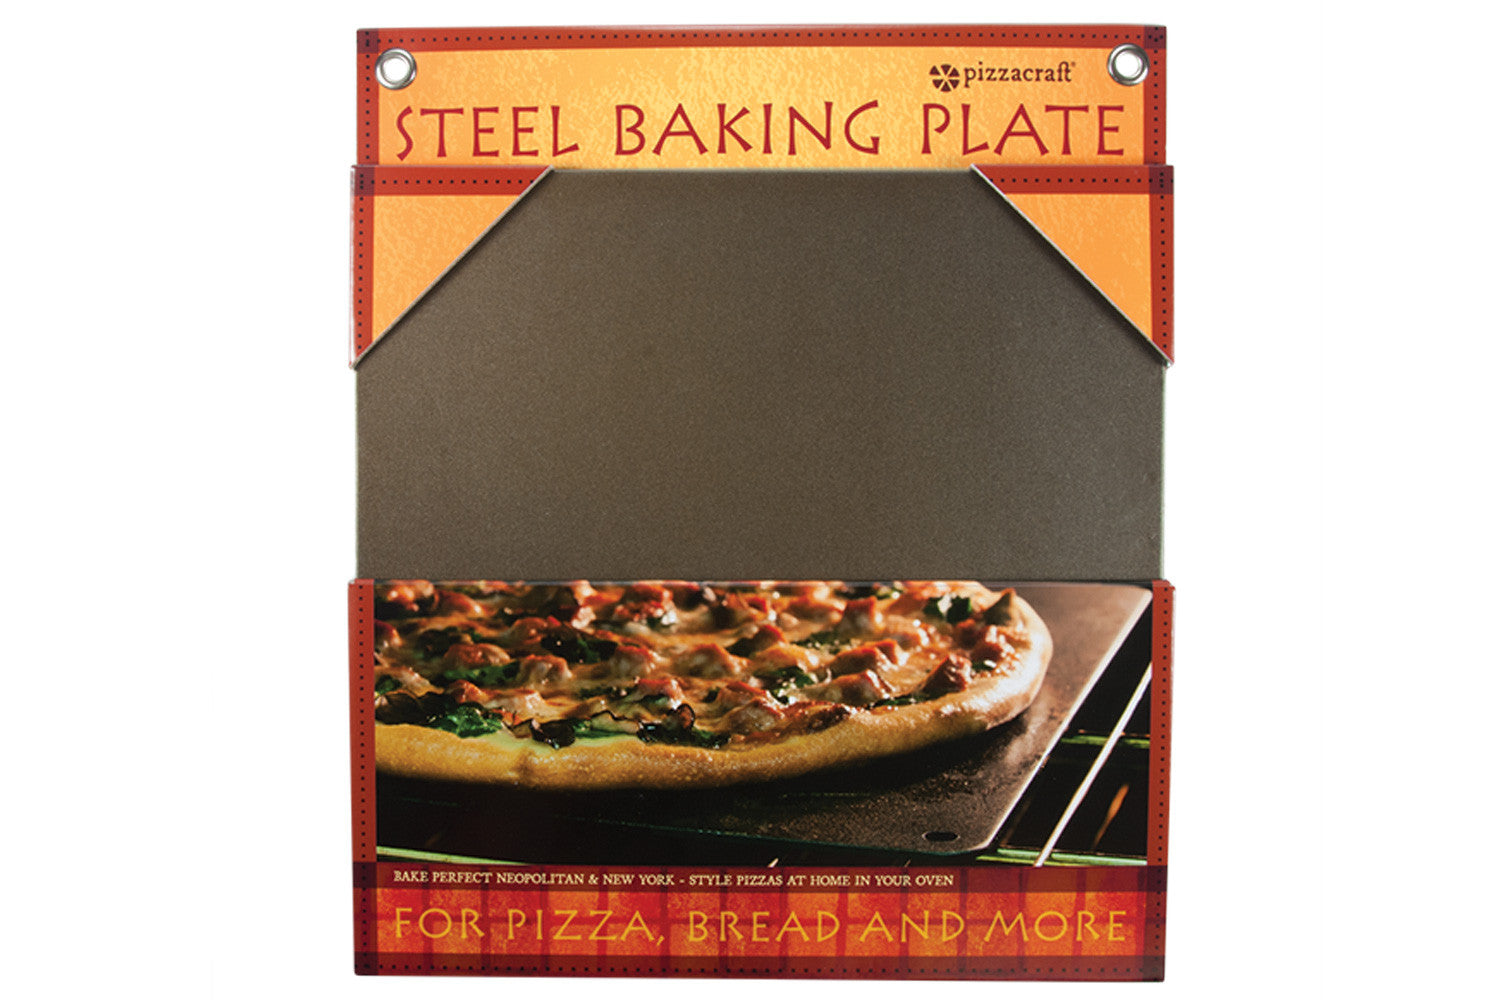 Steel Baking Plate in Packaging